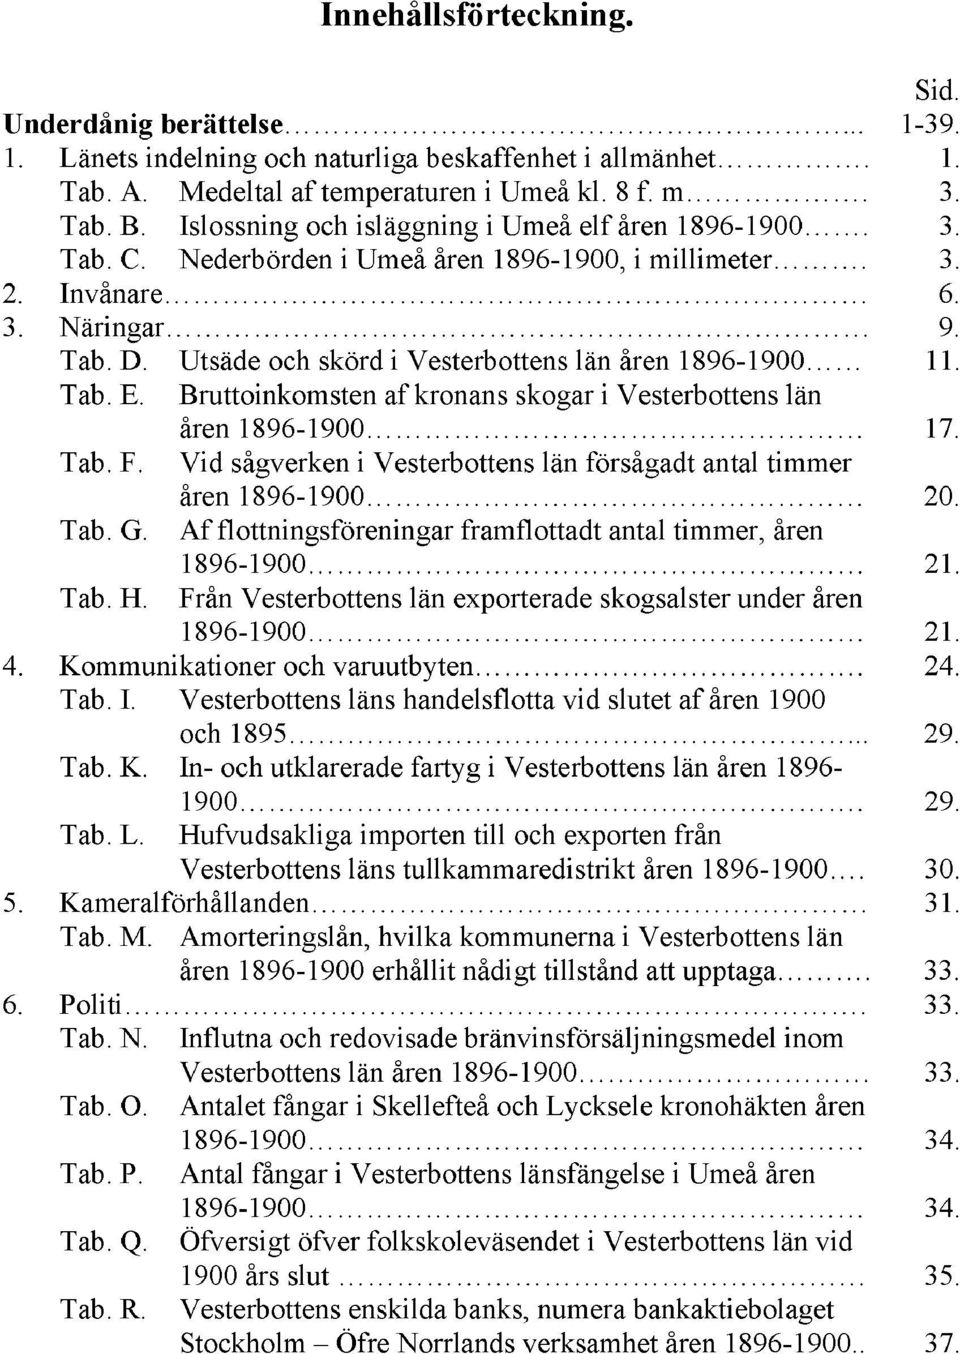 Utsäde och skörd i Vesterbottens län åren 1896-1900 11. Tab. E. Bruttoinkomsten af kronans skogar i Vesterbottens län åren 1896-1900 17. Tab. F.